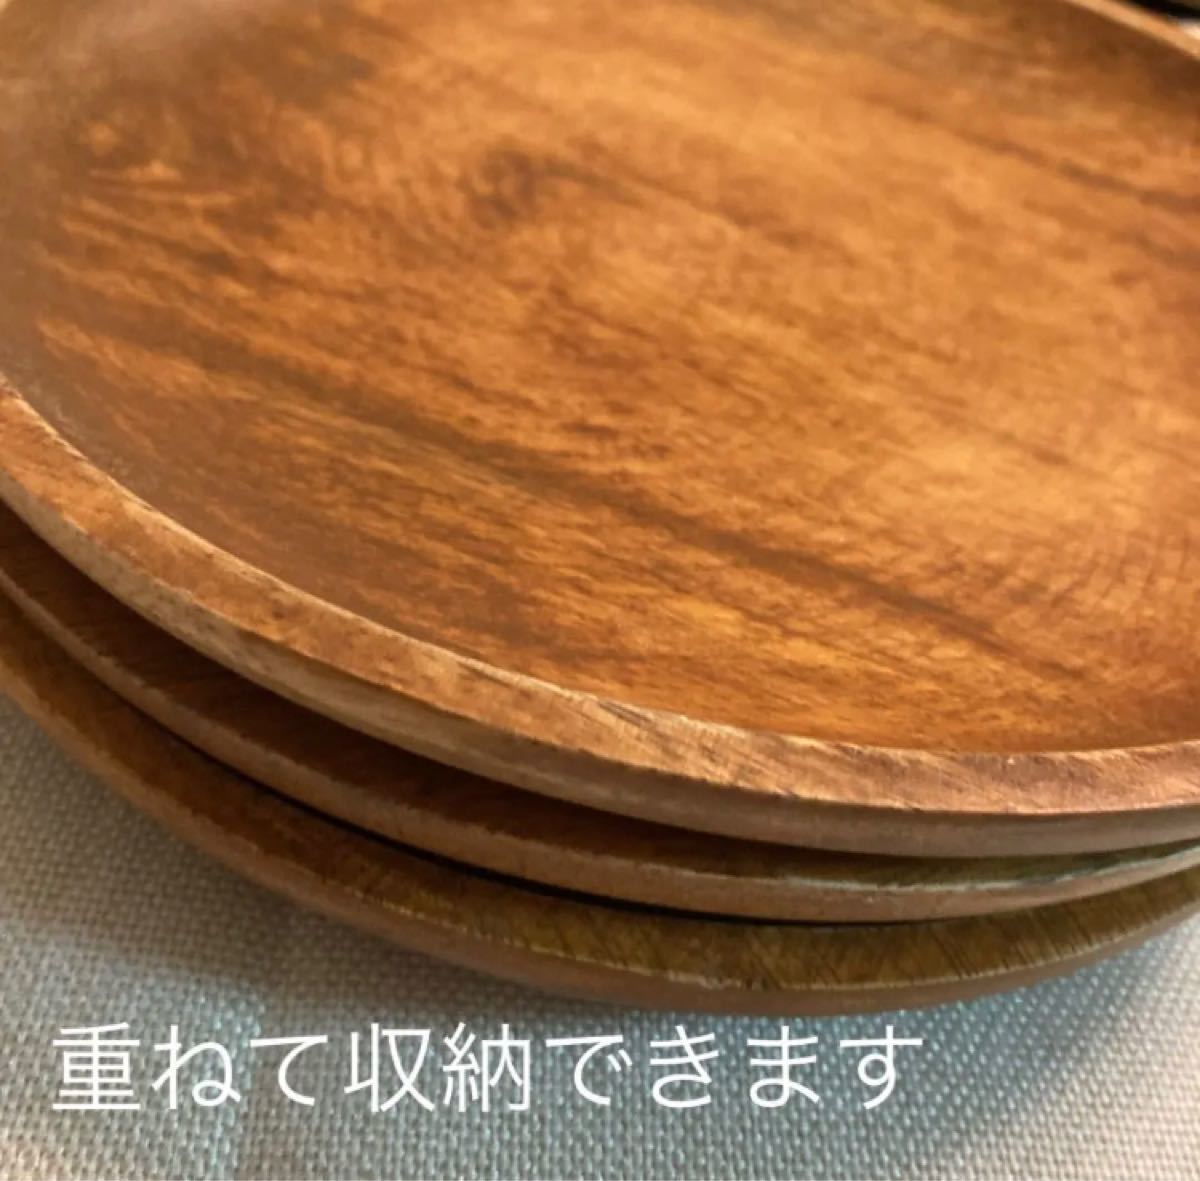 アカシア ラウンドプレート3枚セット 新品 ワンプレート カレー皿 木製トレー 木のお皿 木製食器 丸皿